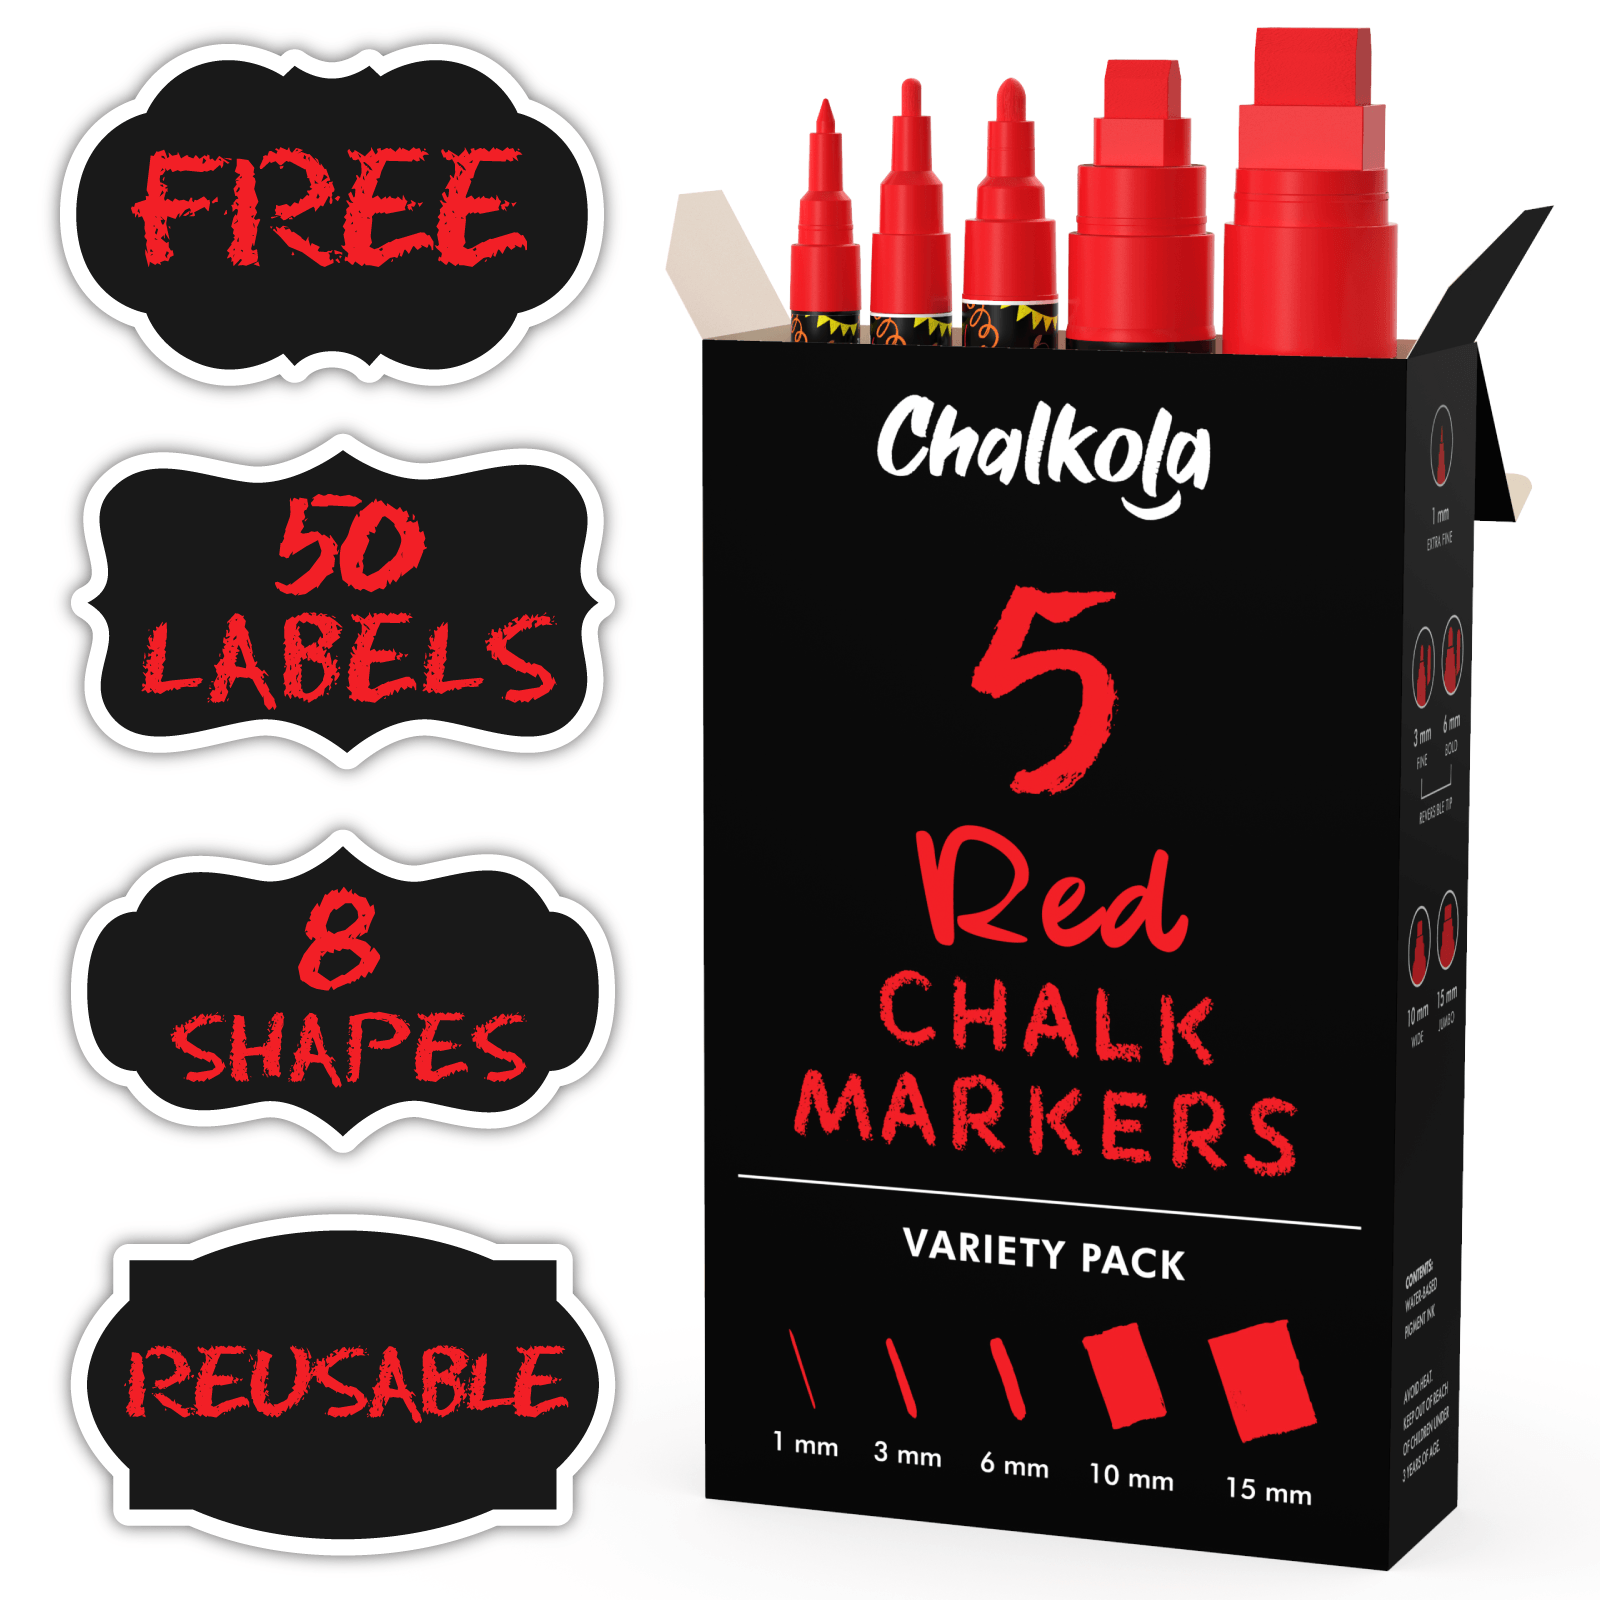 Chalkola chk_5_yellow_markers 5 Yellow Chalkboard Chalk Markers